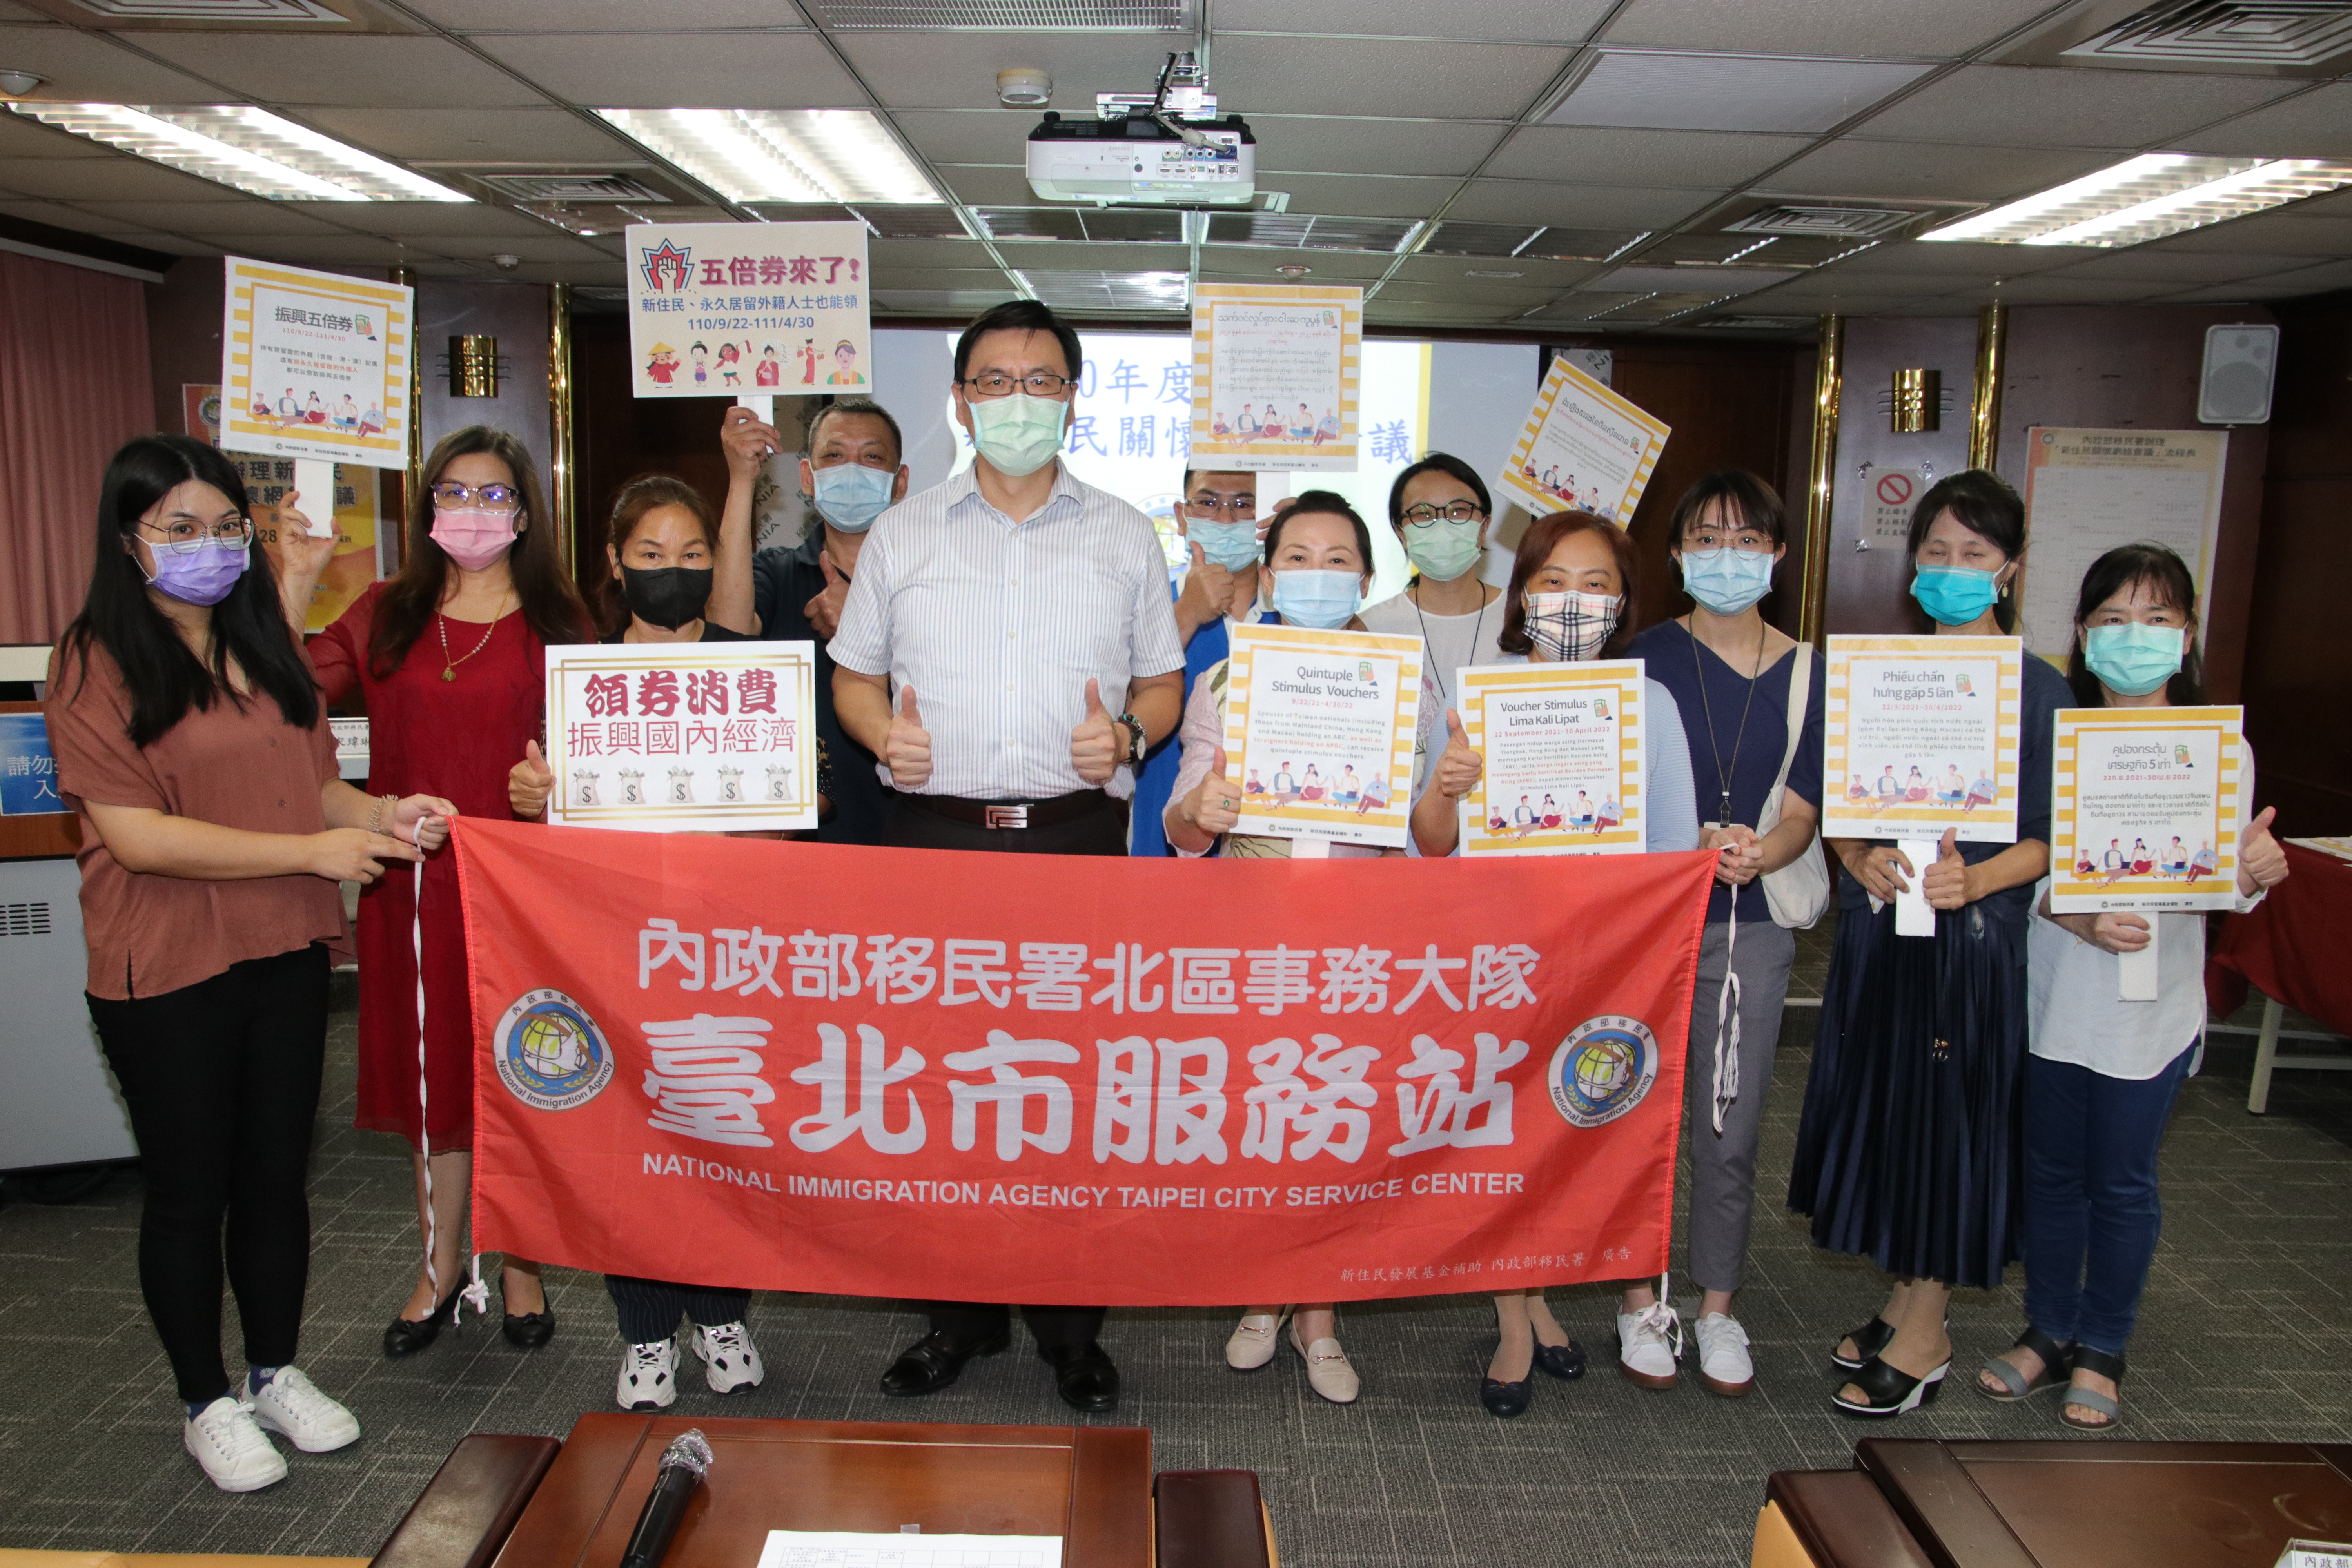 Departemen Imigrasi mengadakan pertemuan online untuk penduduk baru dan juga menjelaskan ketentuan terkait tentang revitalisasi kupon 5X kepada kelompok penduduk baru yang berpartisipasi. Sumber: Diambil dari Stasiun Layanan Kota Taipei